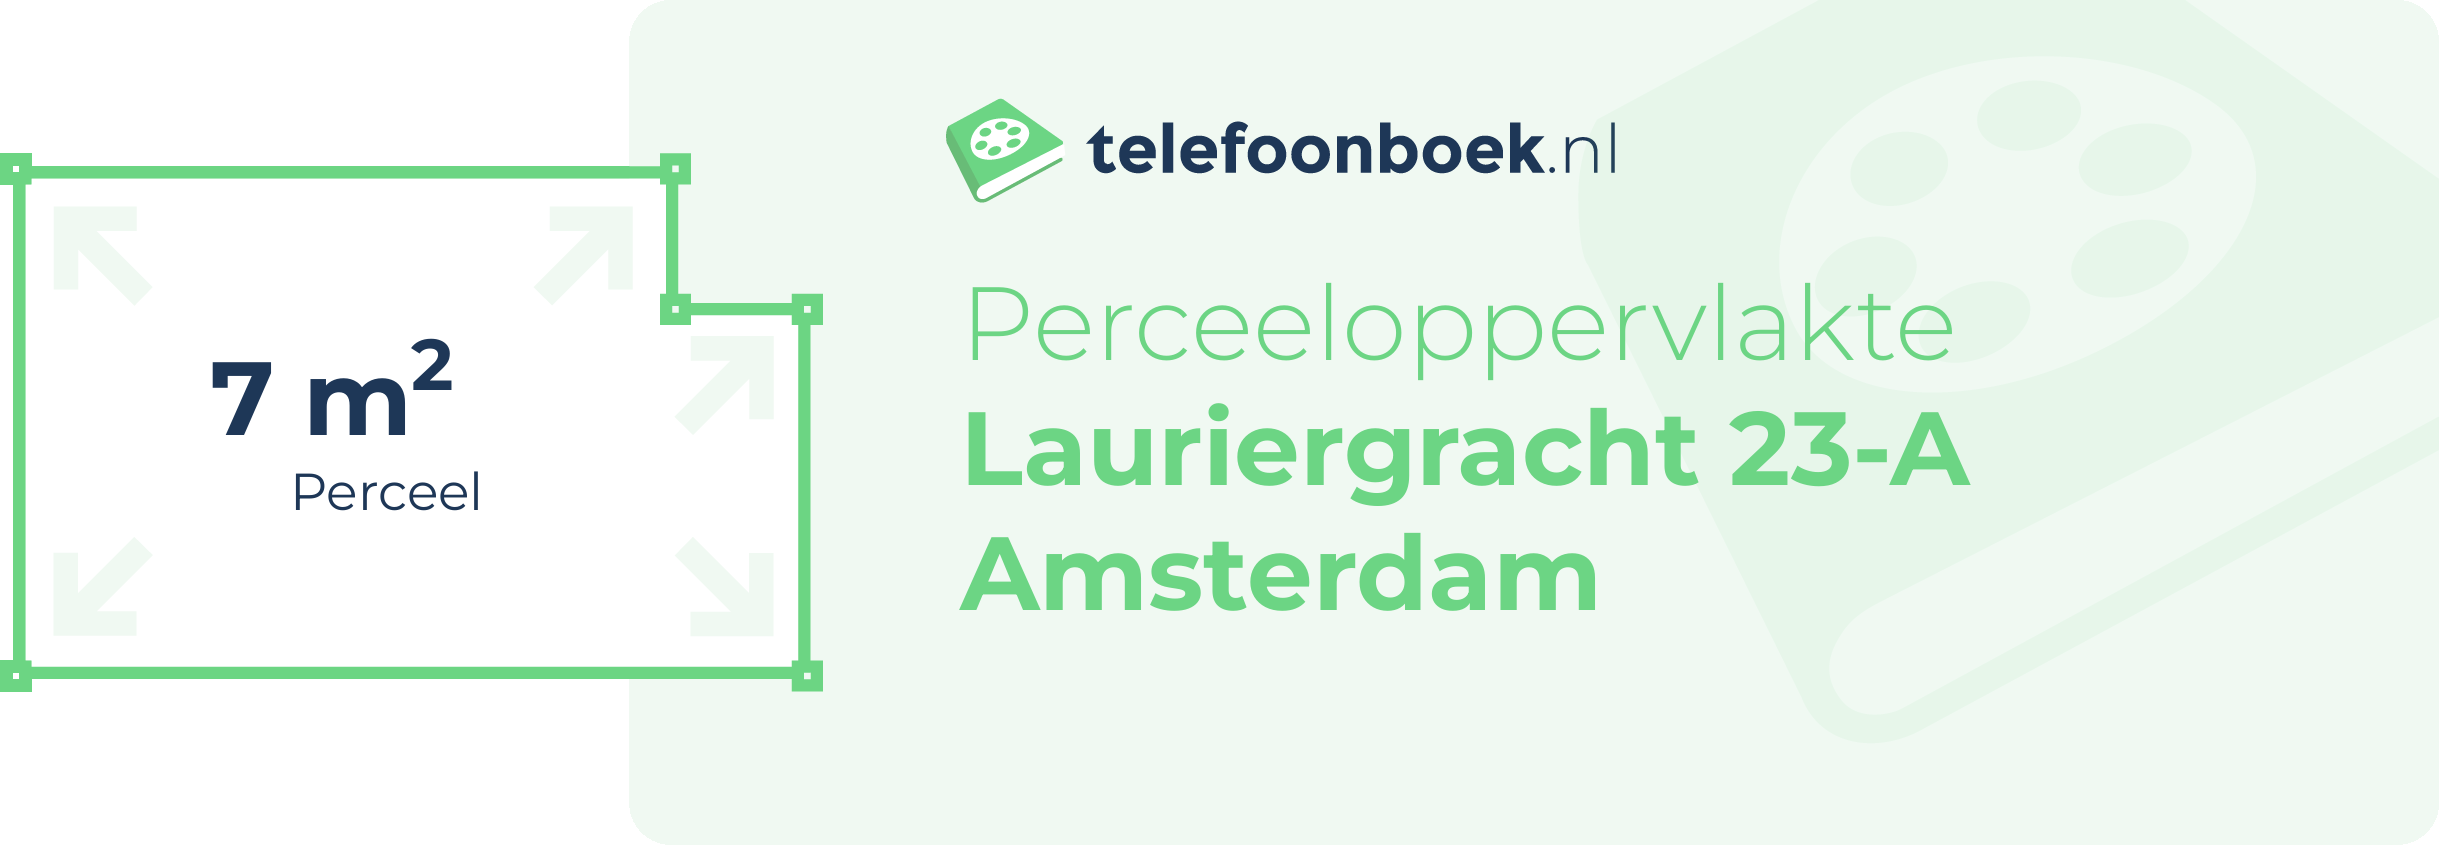 Perceeloppervlakte Lauriergracht 23-A Amsterdam